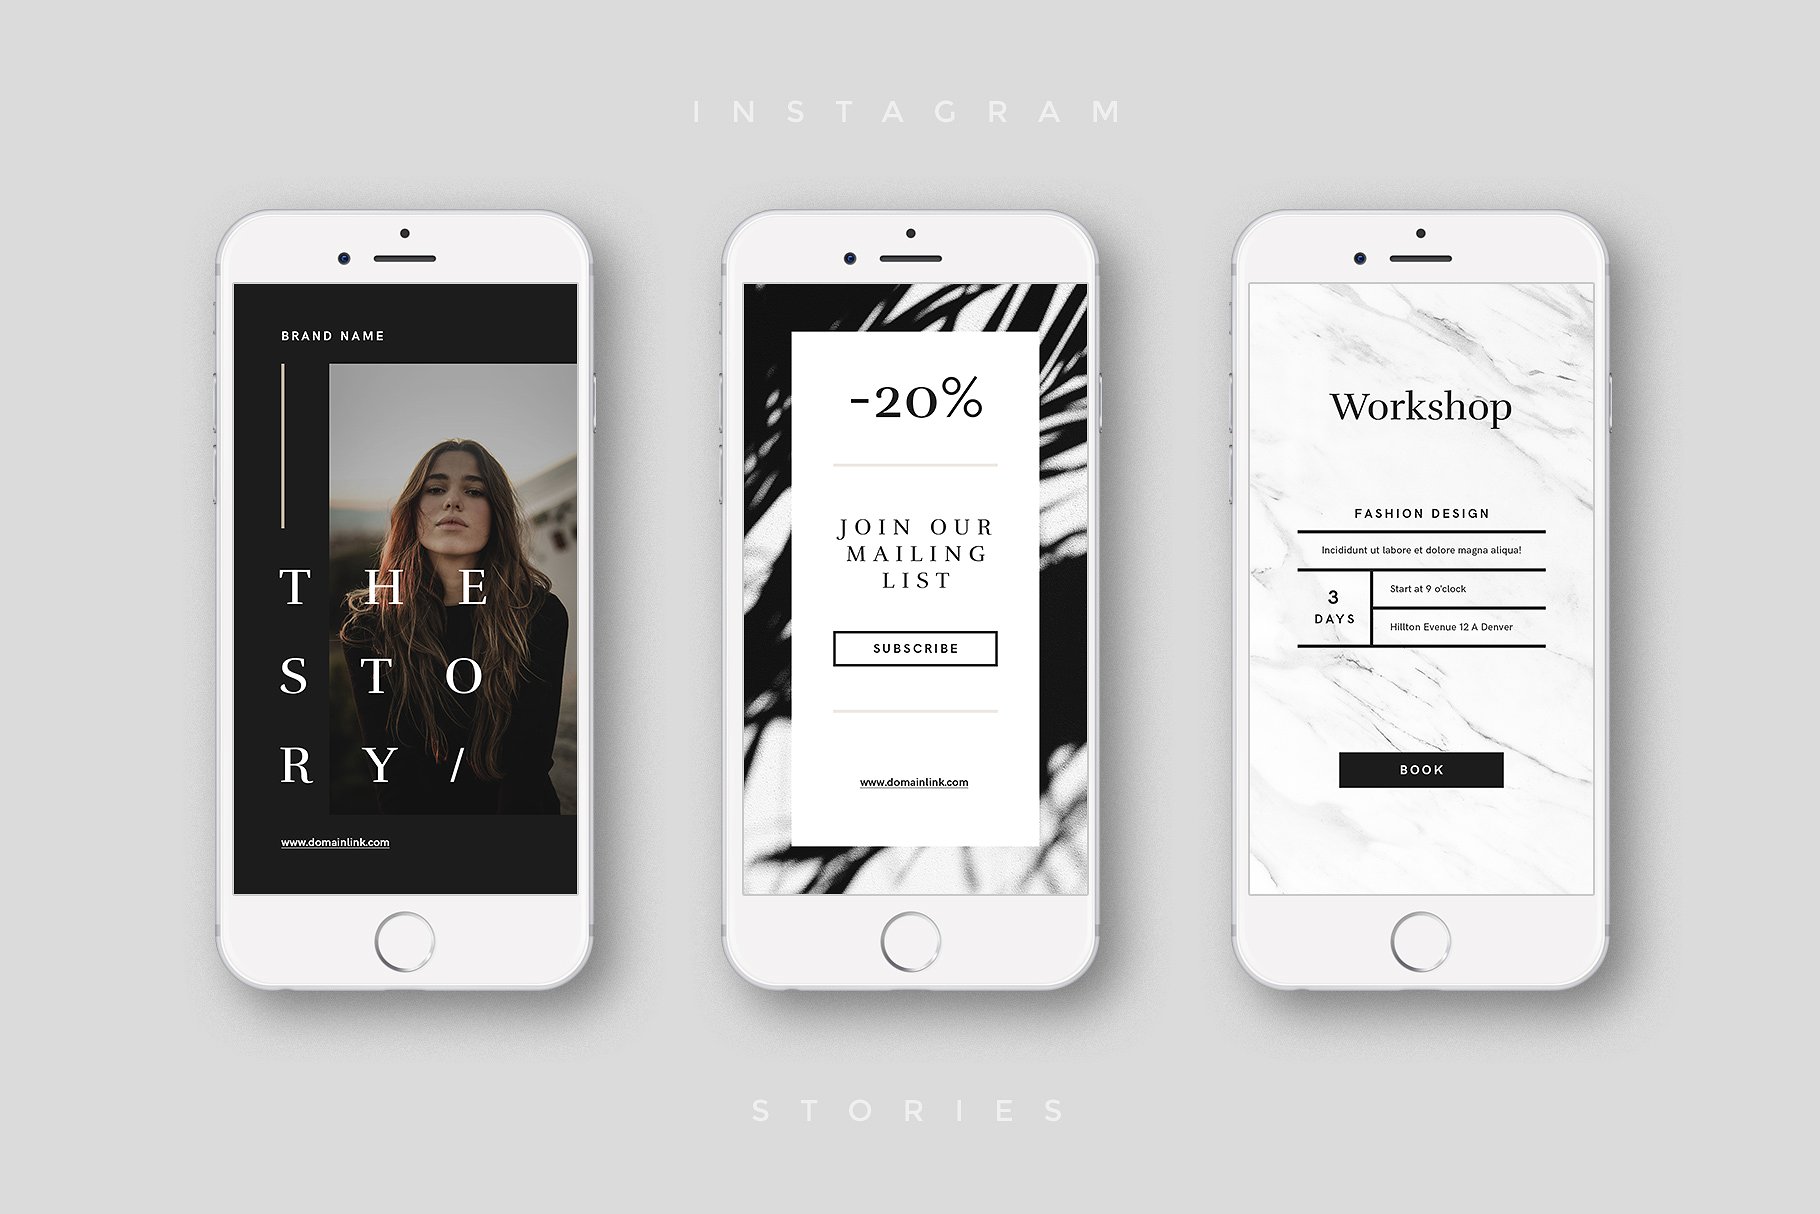 奢侈品电商社交媒体Ins故事贴图模板16图库精选 Luxury Instagram Stories Pack插图(4)